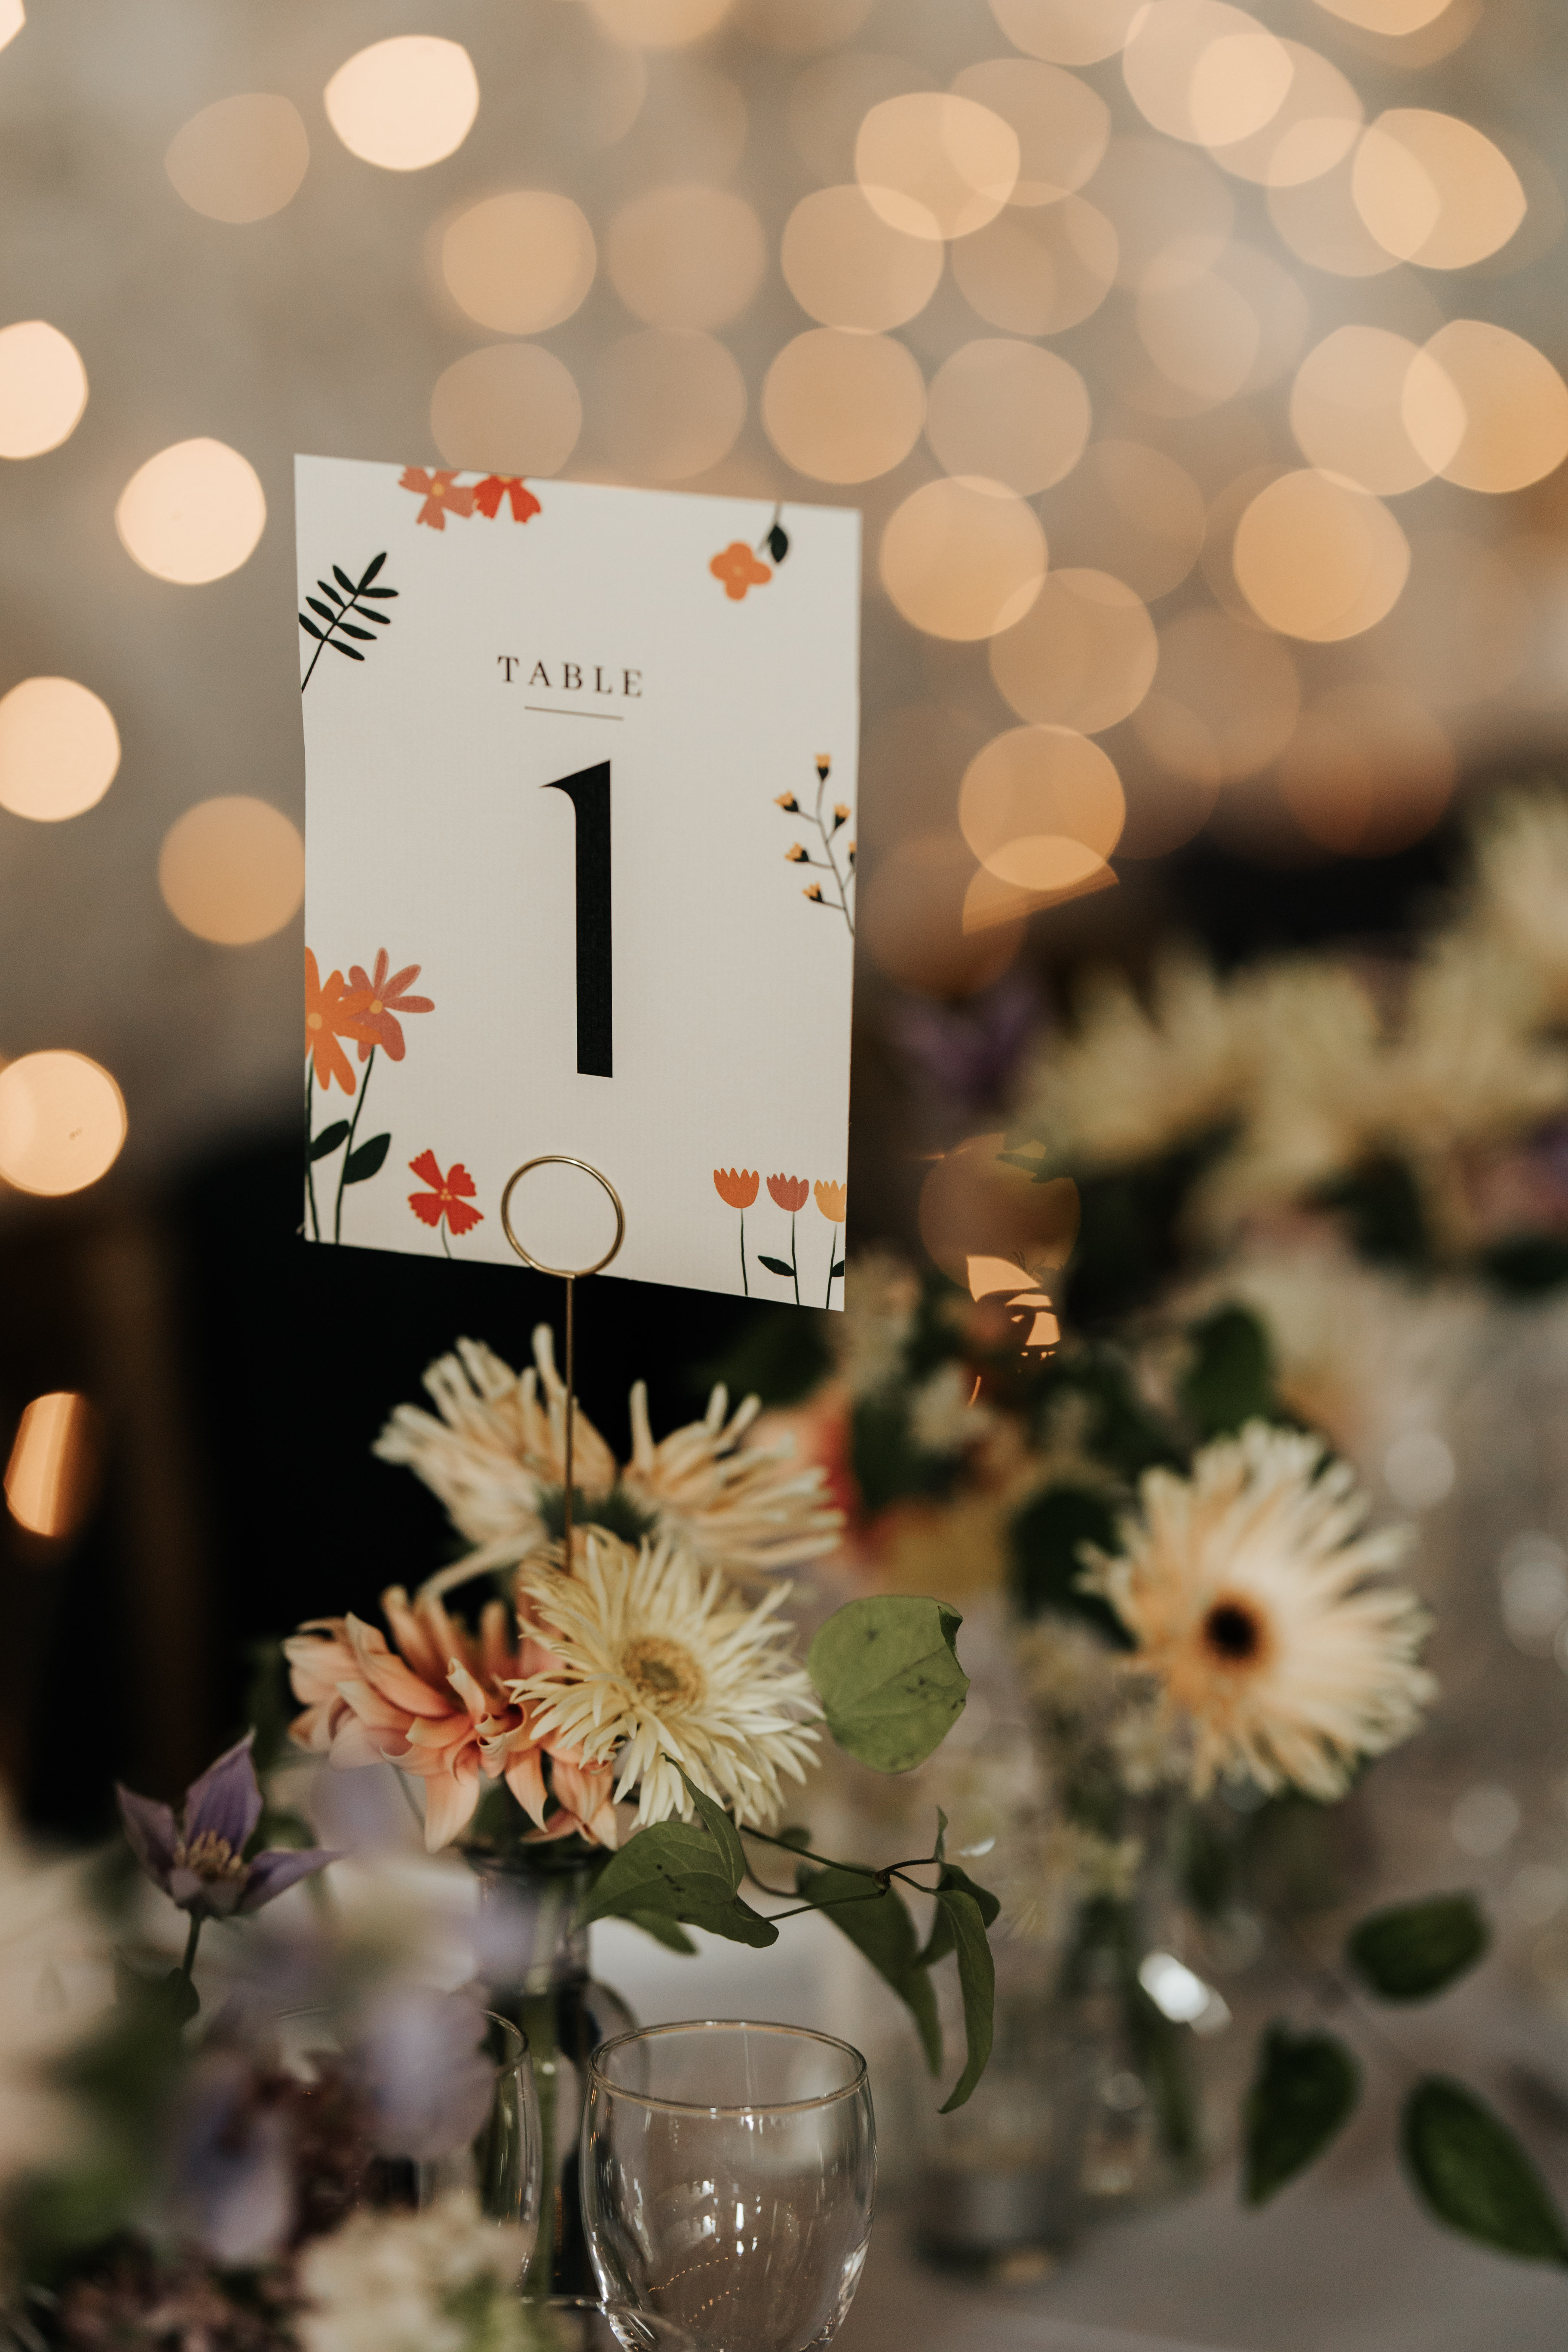 Le numéro de table planté dans un bouquet de fleurs